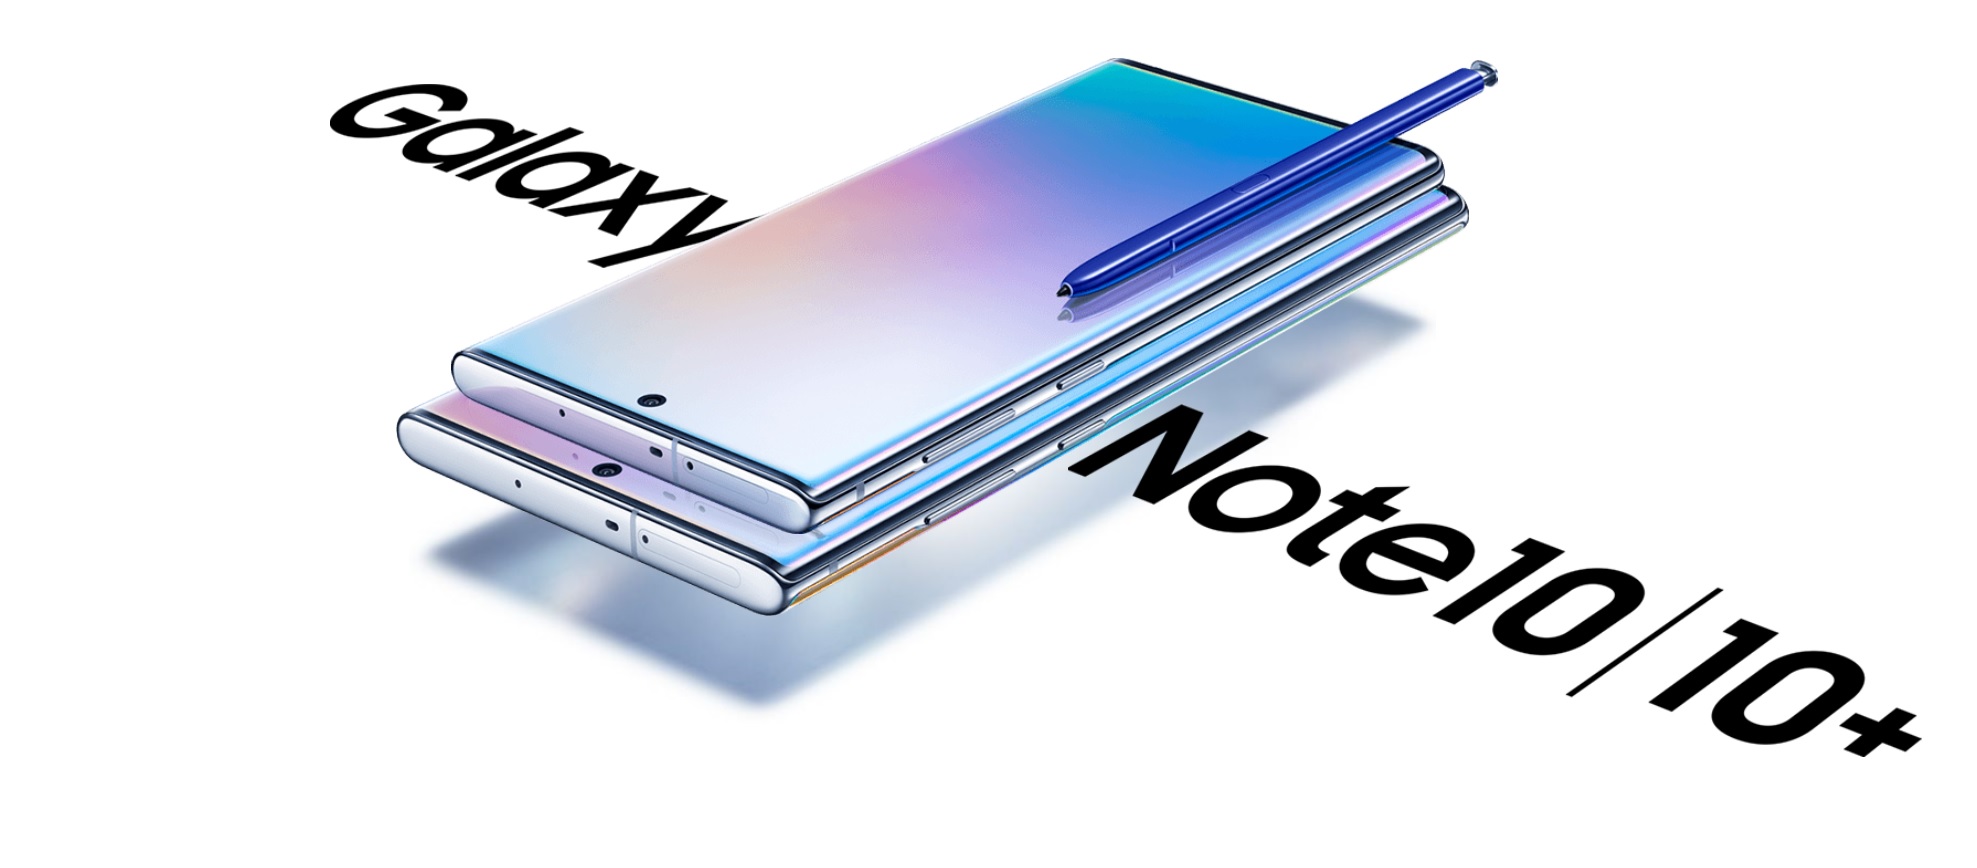 Samsung Galaxy Note10 5G